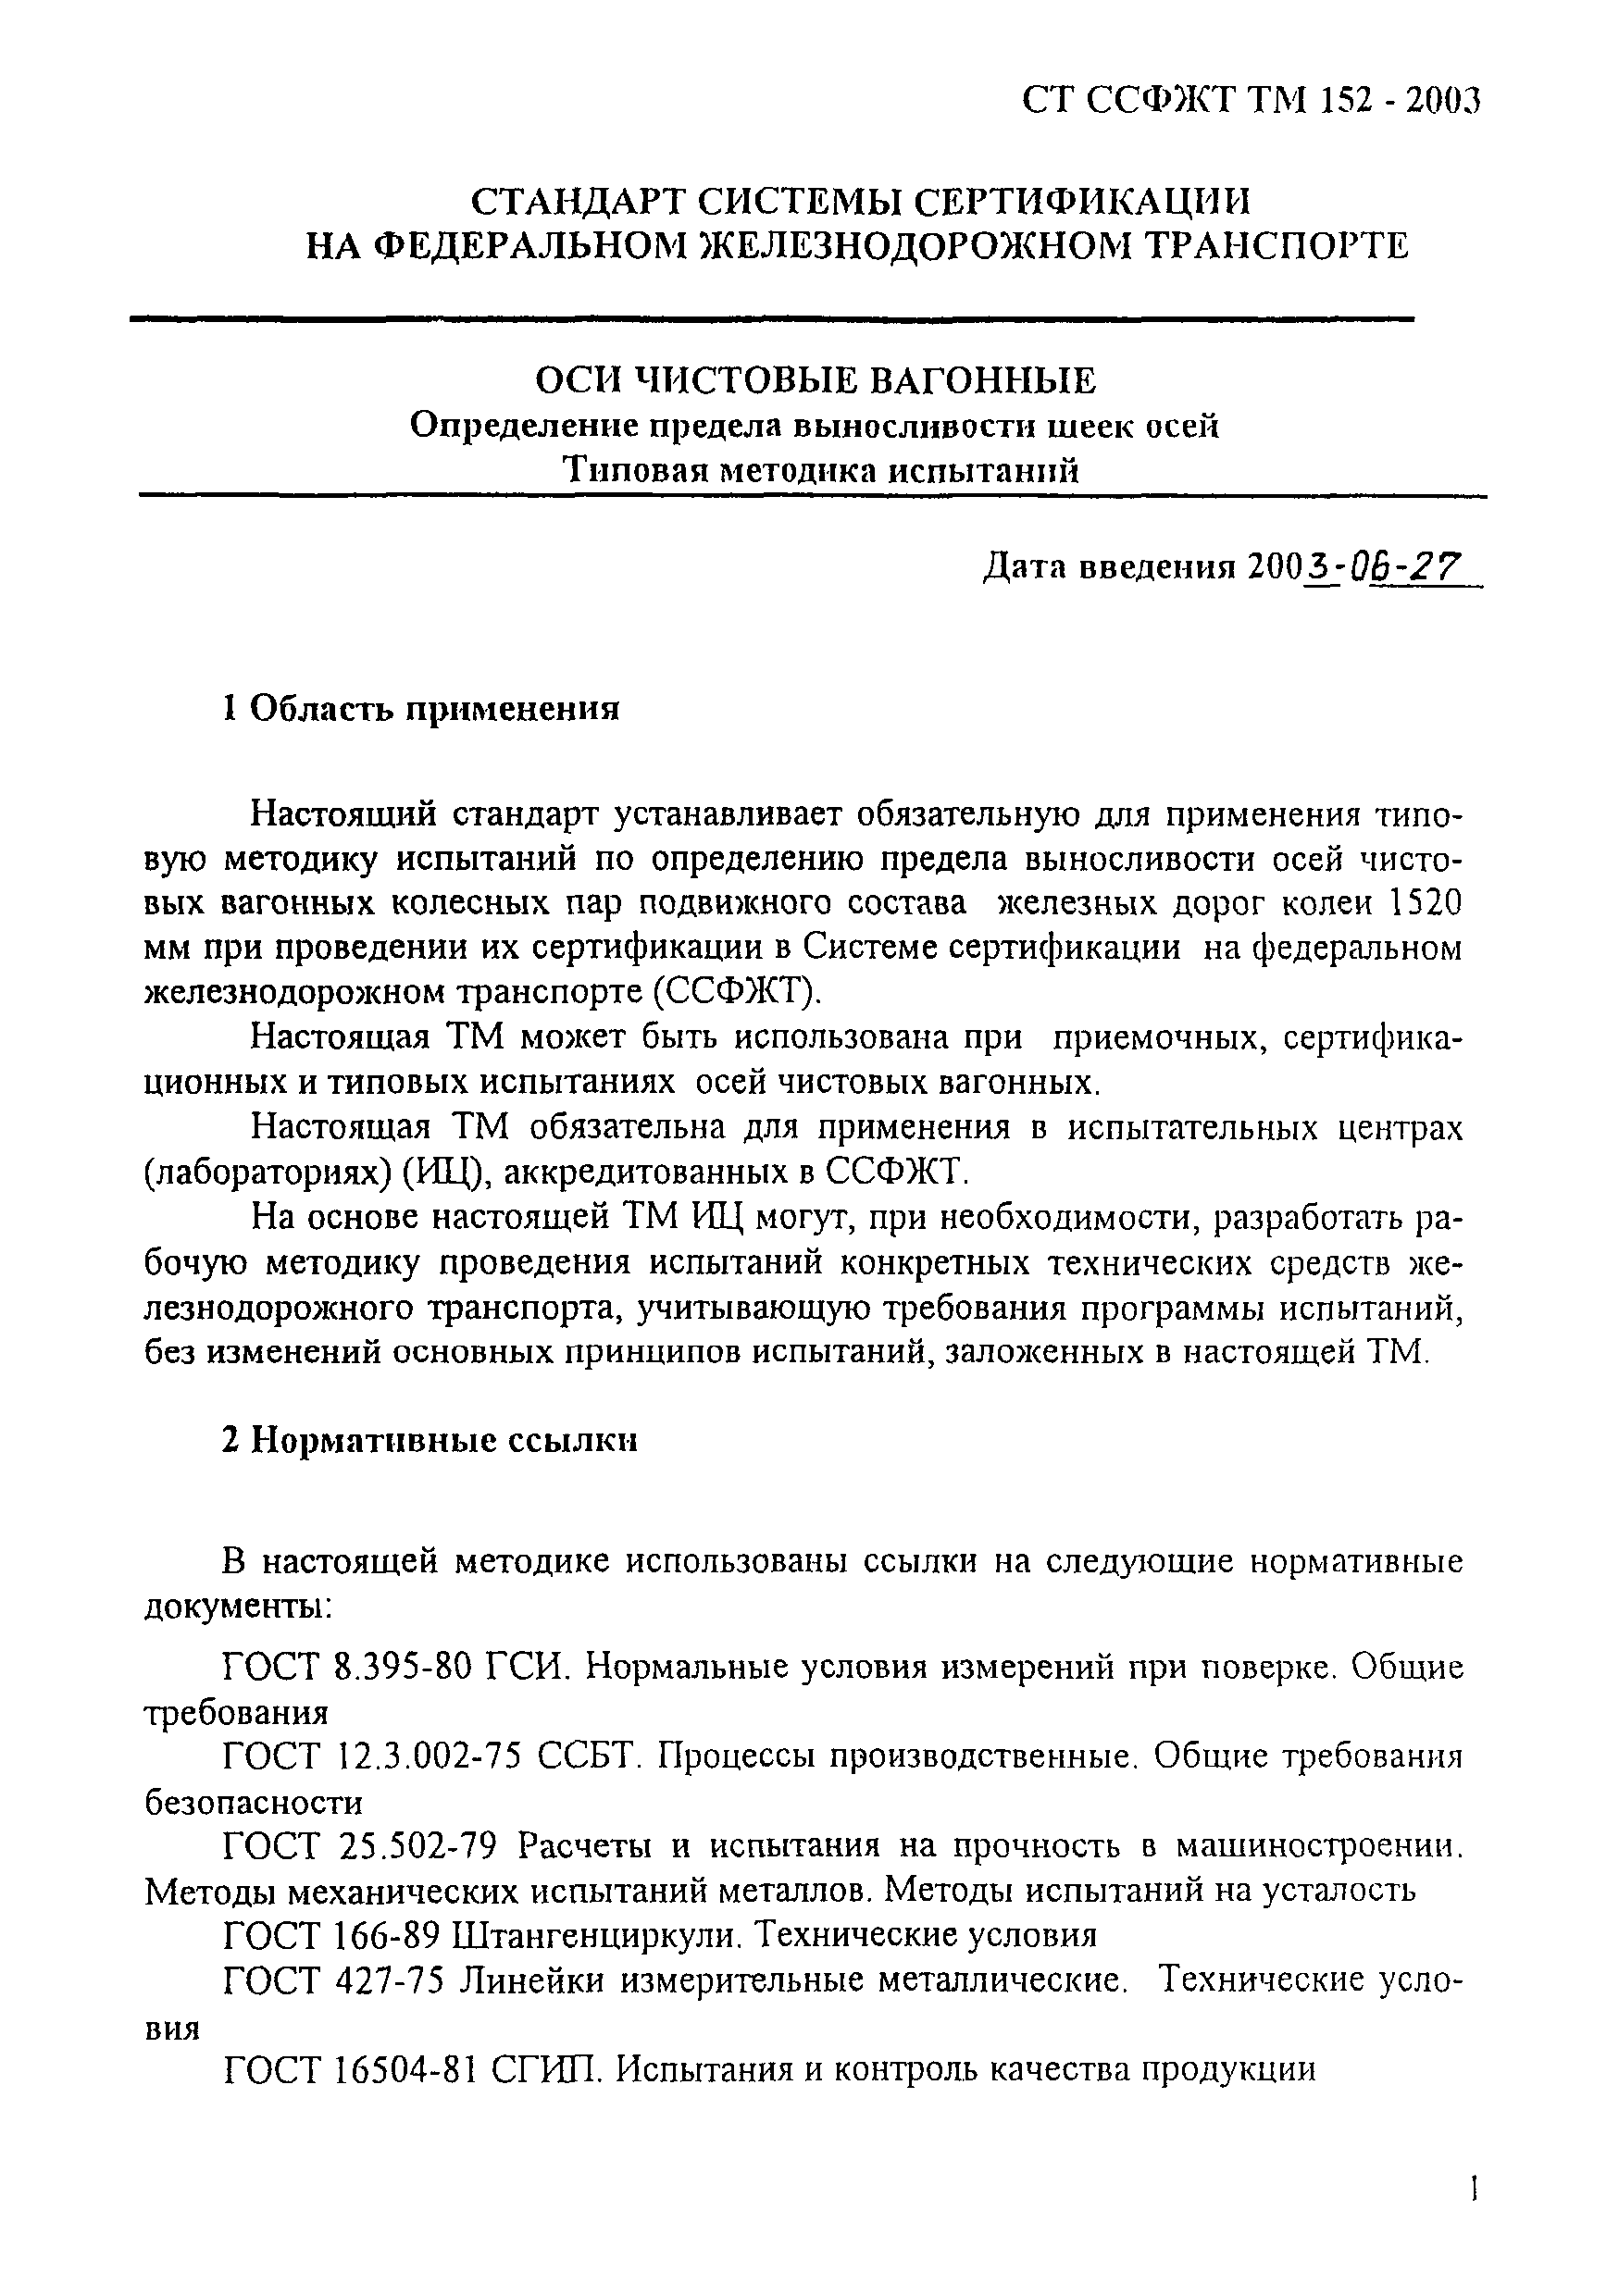 СТ ССФЖТ ТМ 152-2003